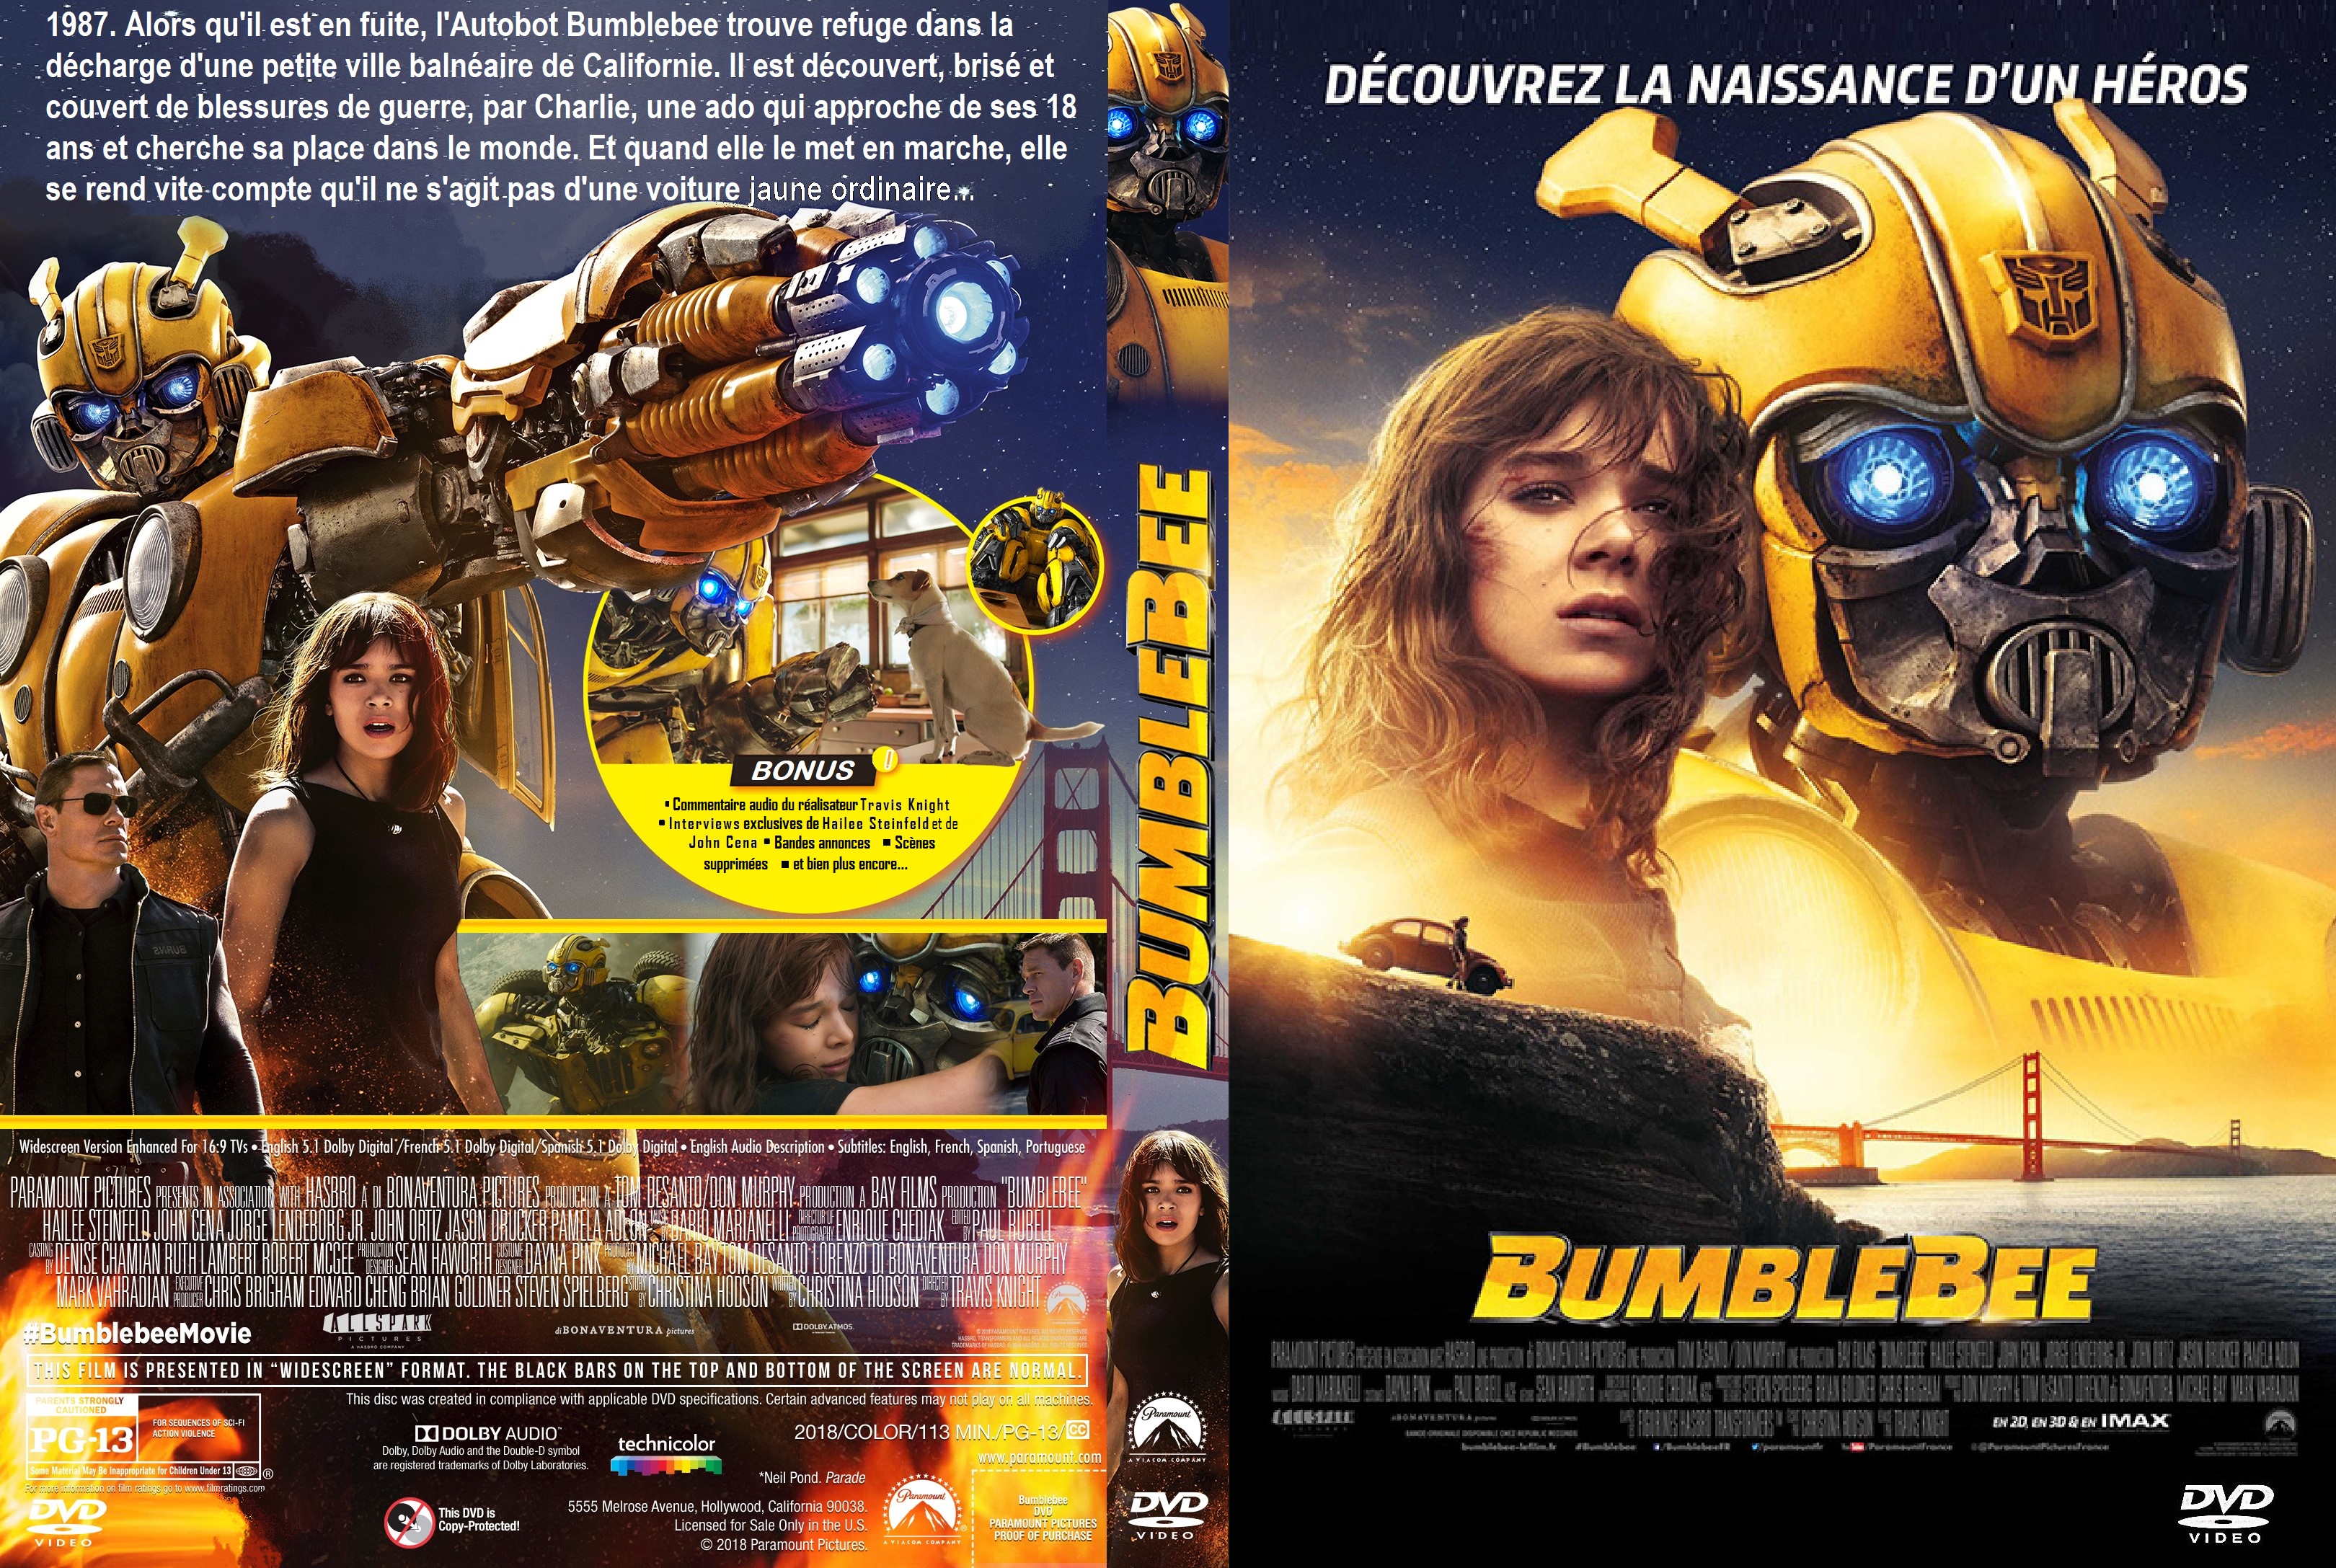 Jaquette DVD Bumblebee custom